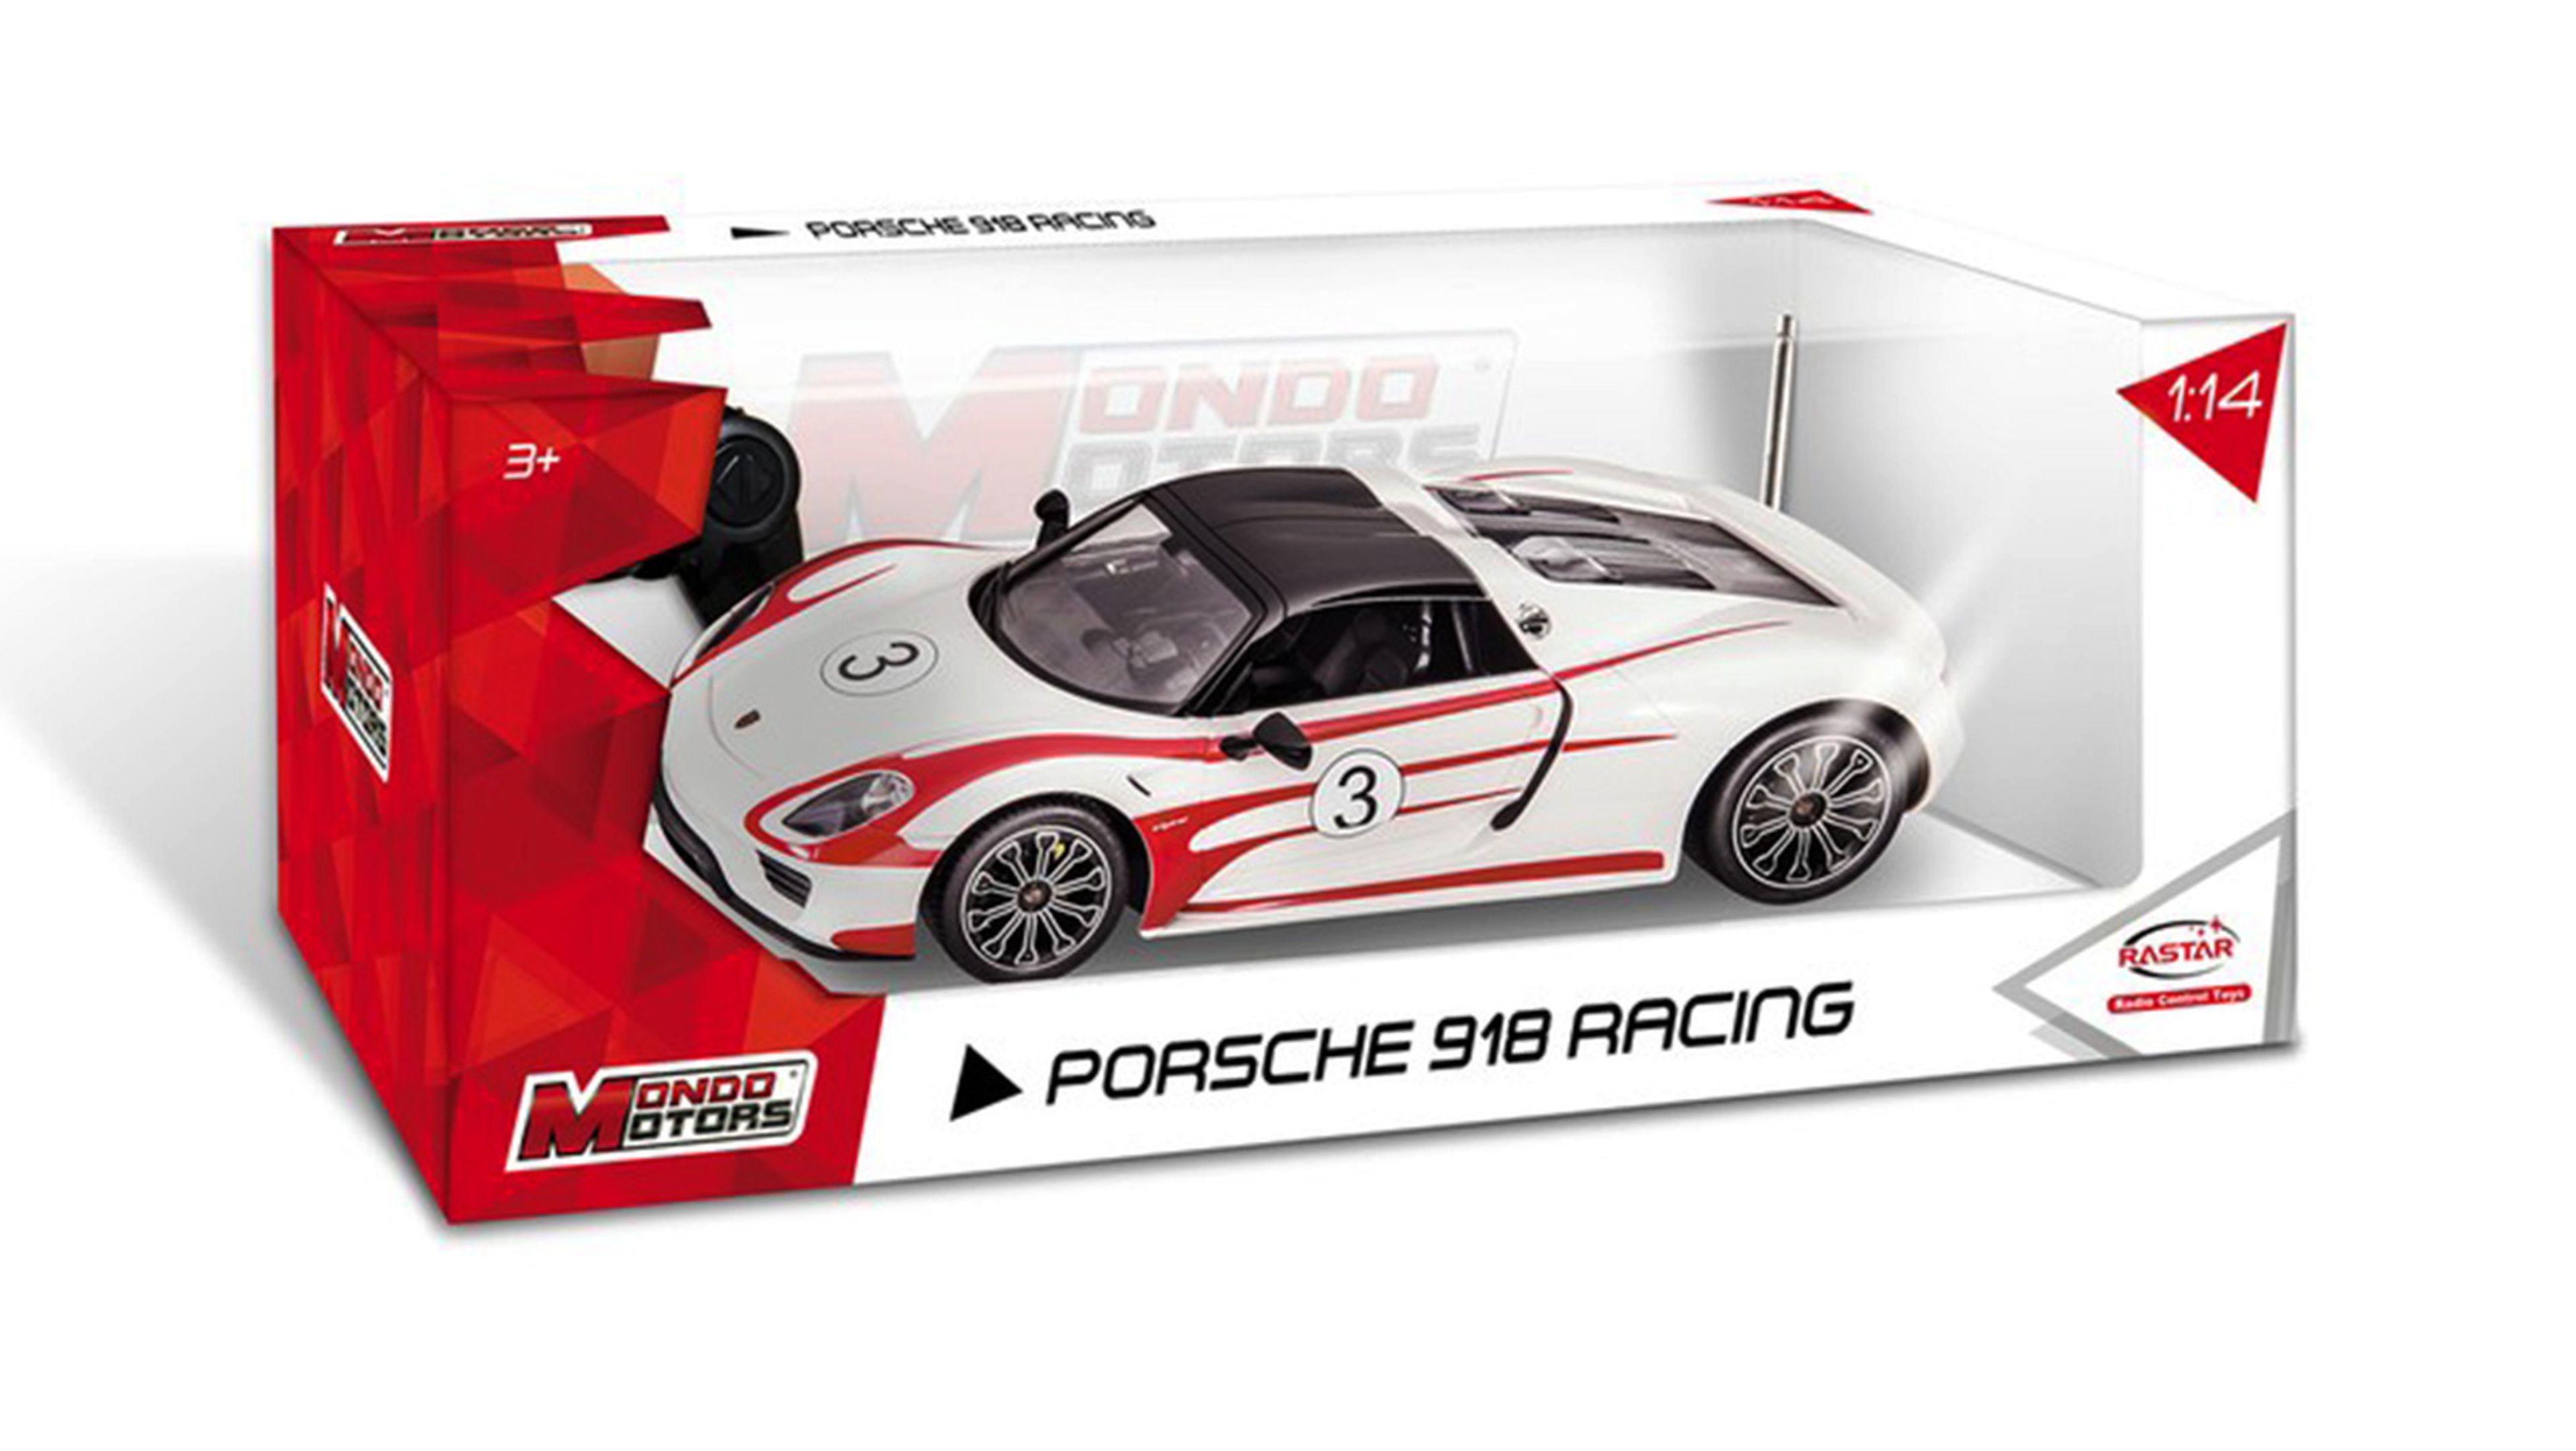 Los 10 mejores regalos para fanáticos de Porsche - 918 de radiocontrol